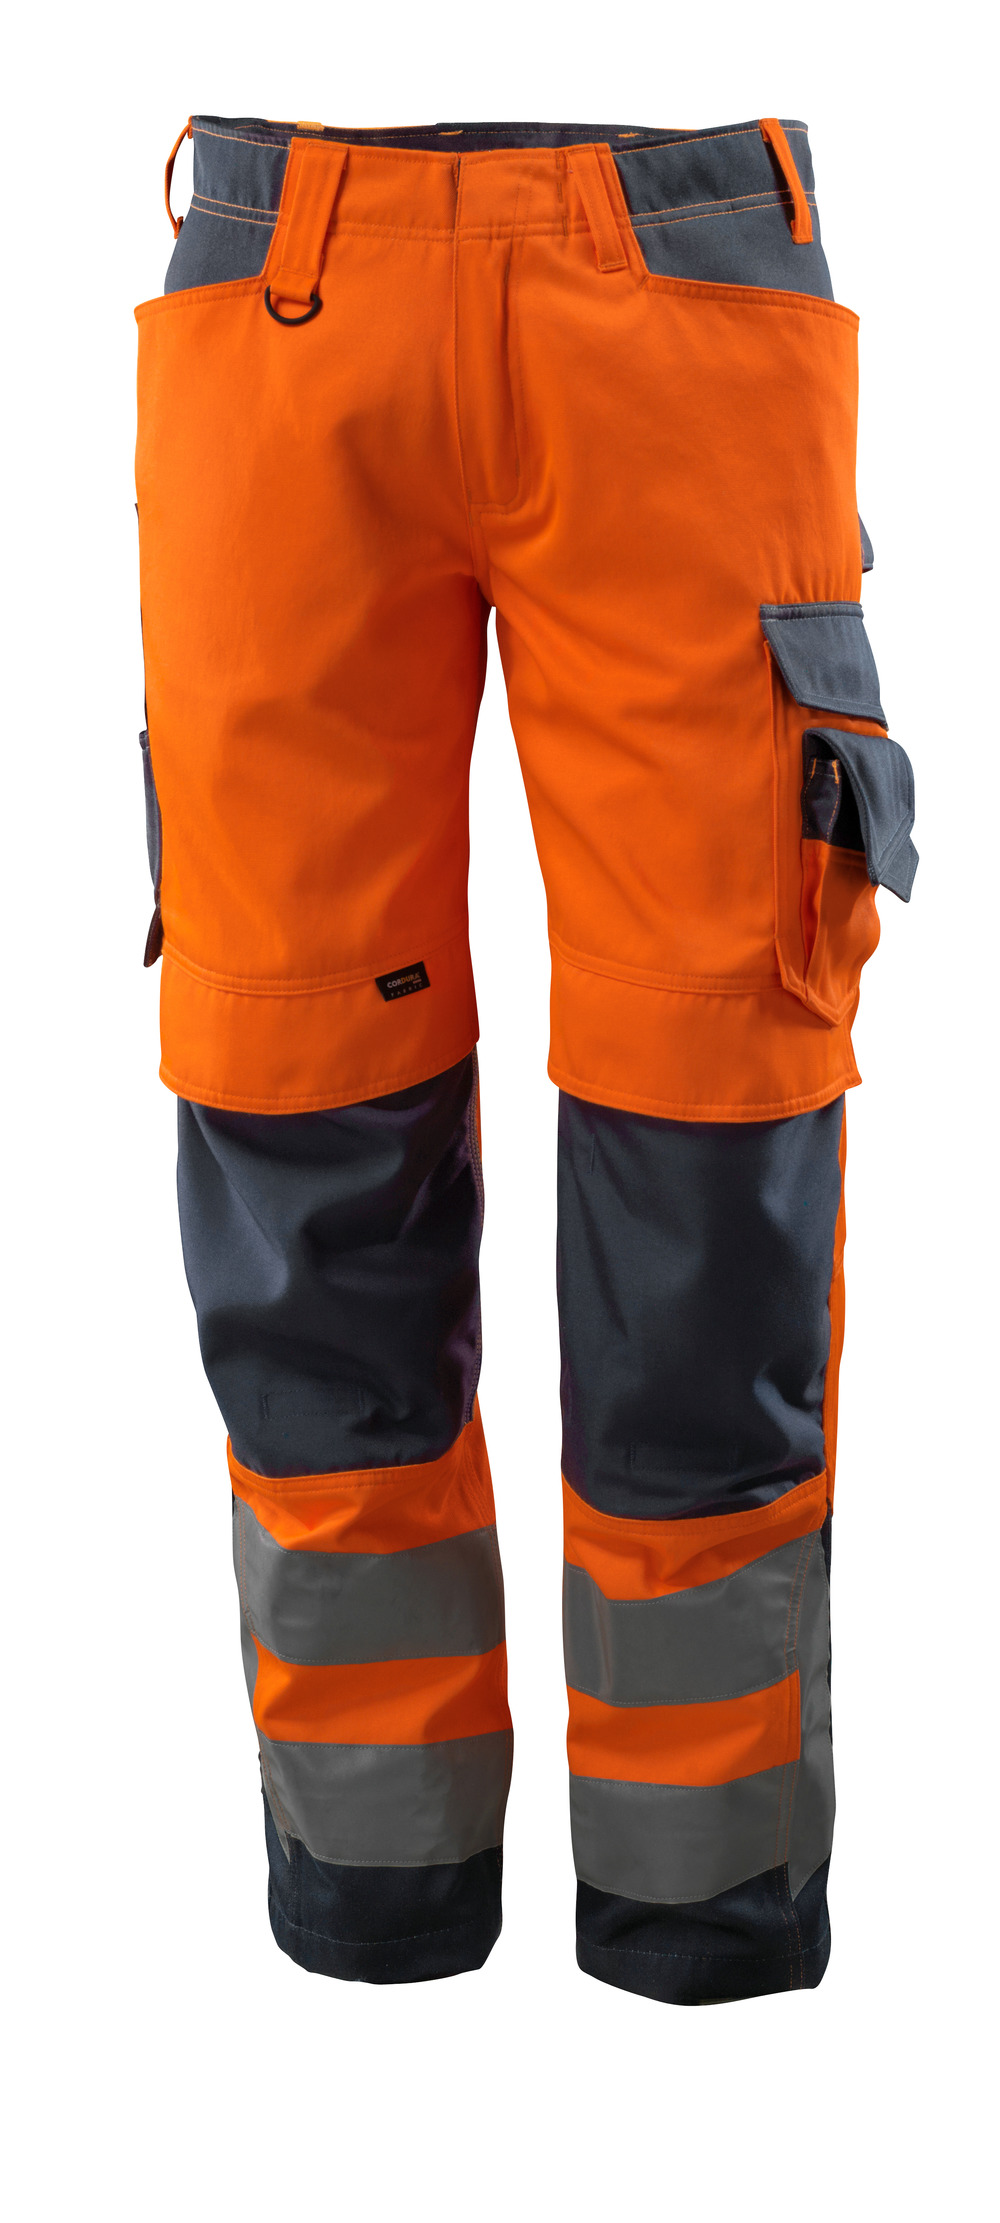 MASCOT-Warnschutz, Warn-Bund-Hose, Kendal,  90 cm, 290 g/m², orange/schwarzblau

